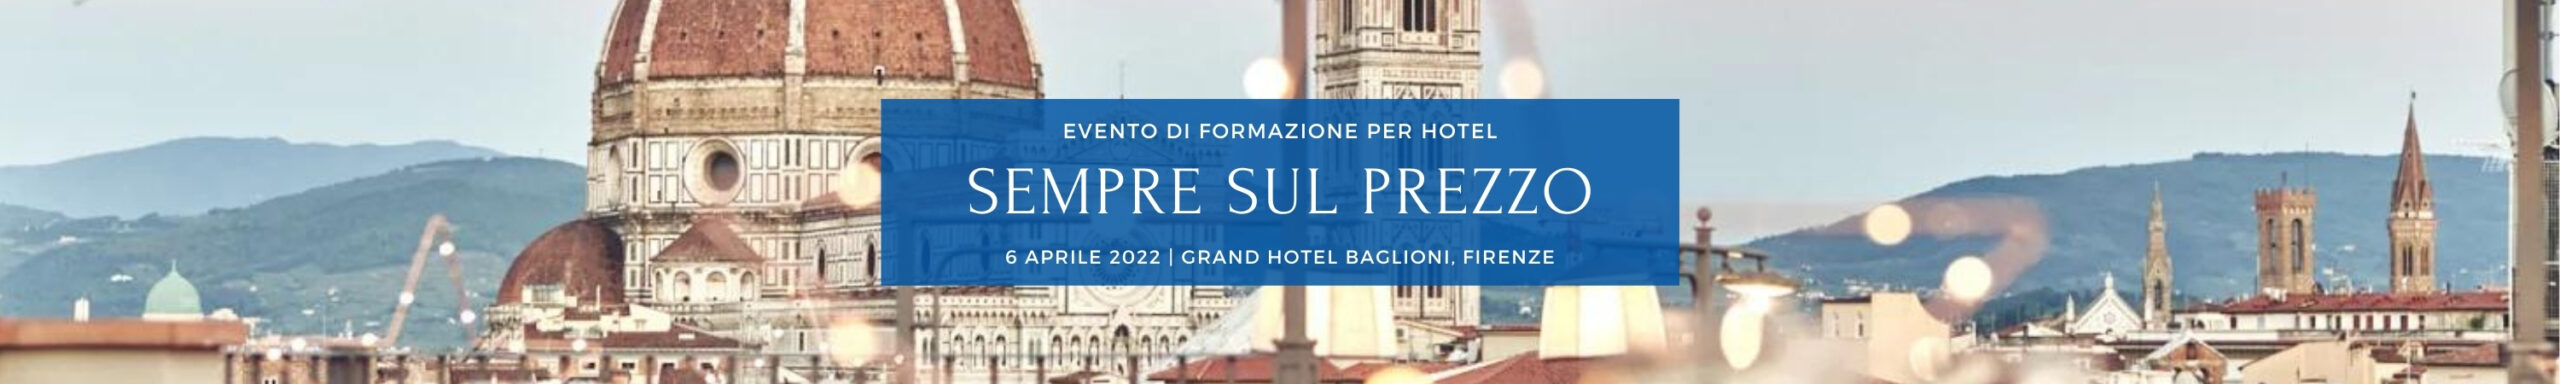 Sempre sul prezzo - evento di formazione per hotel - 6aprile 2022 Firenze